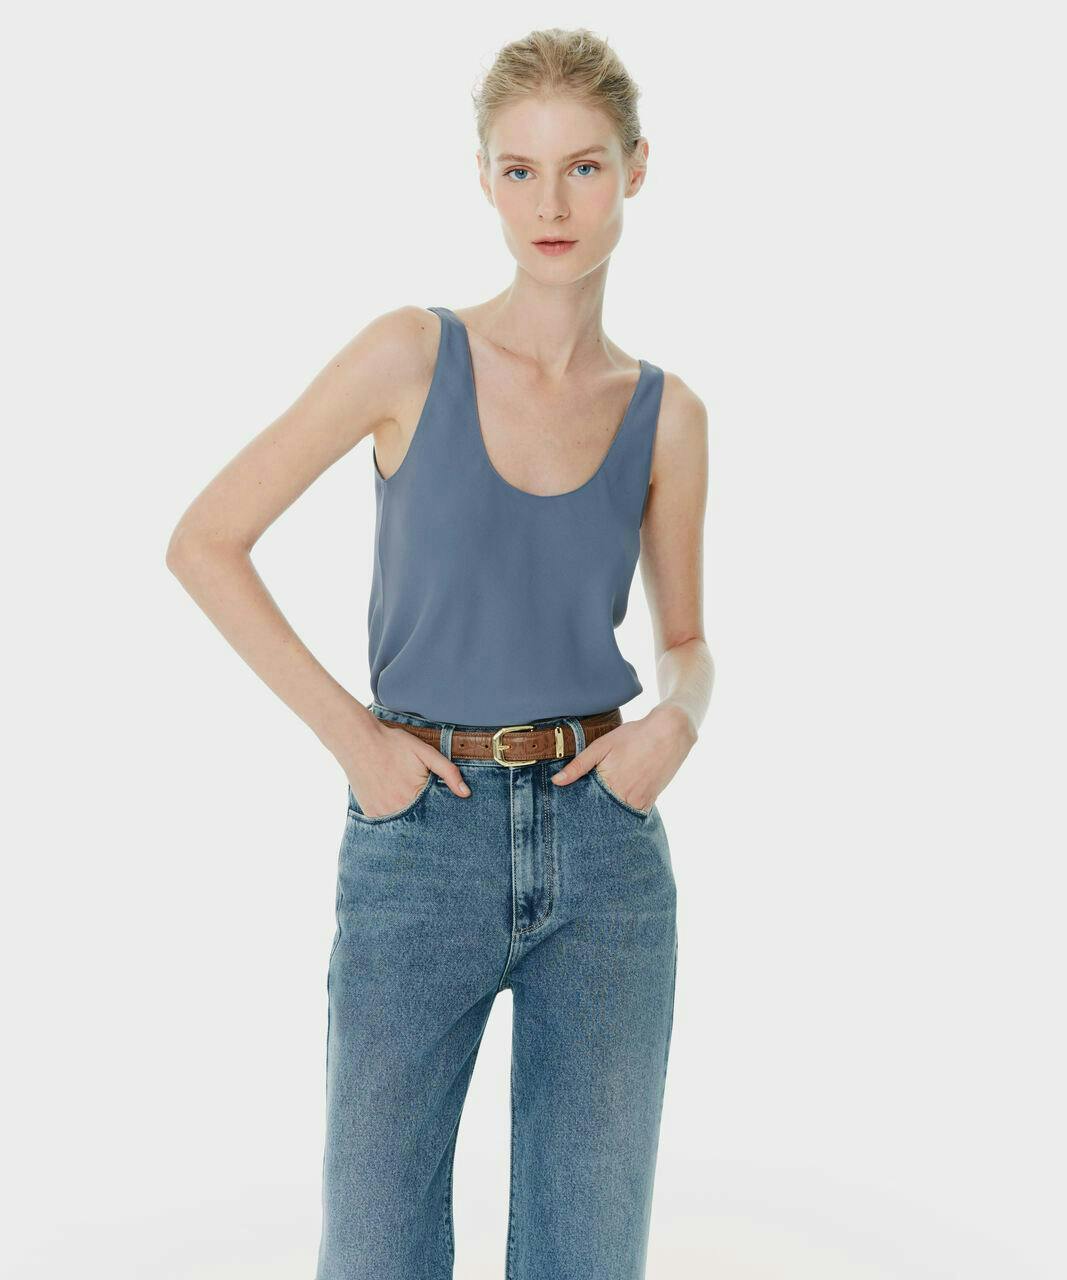 clothing pants accessories belt jeans vest tank top person blouse